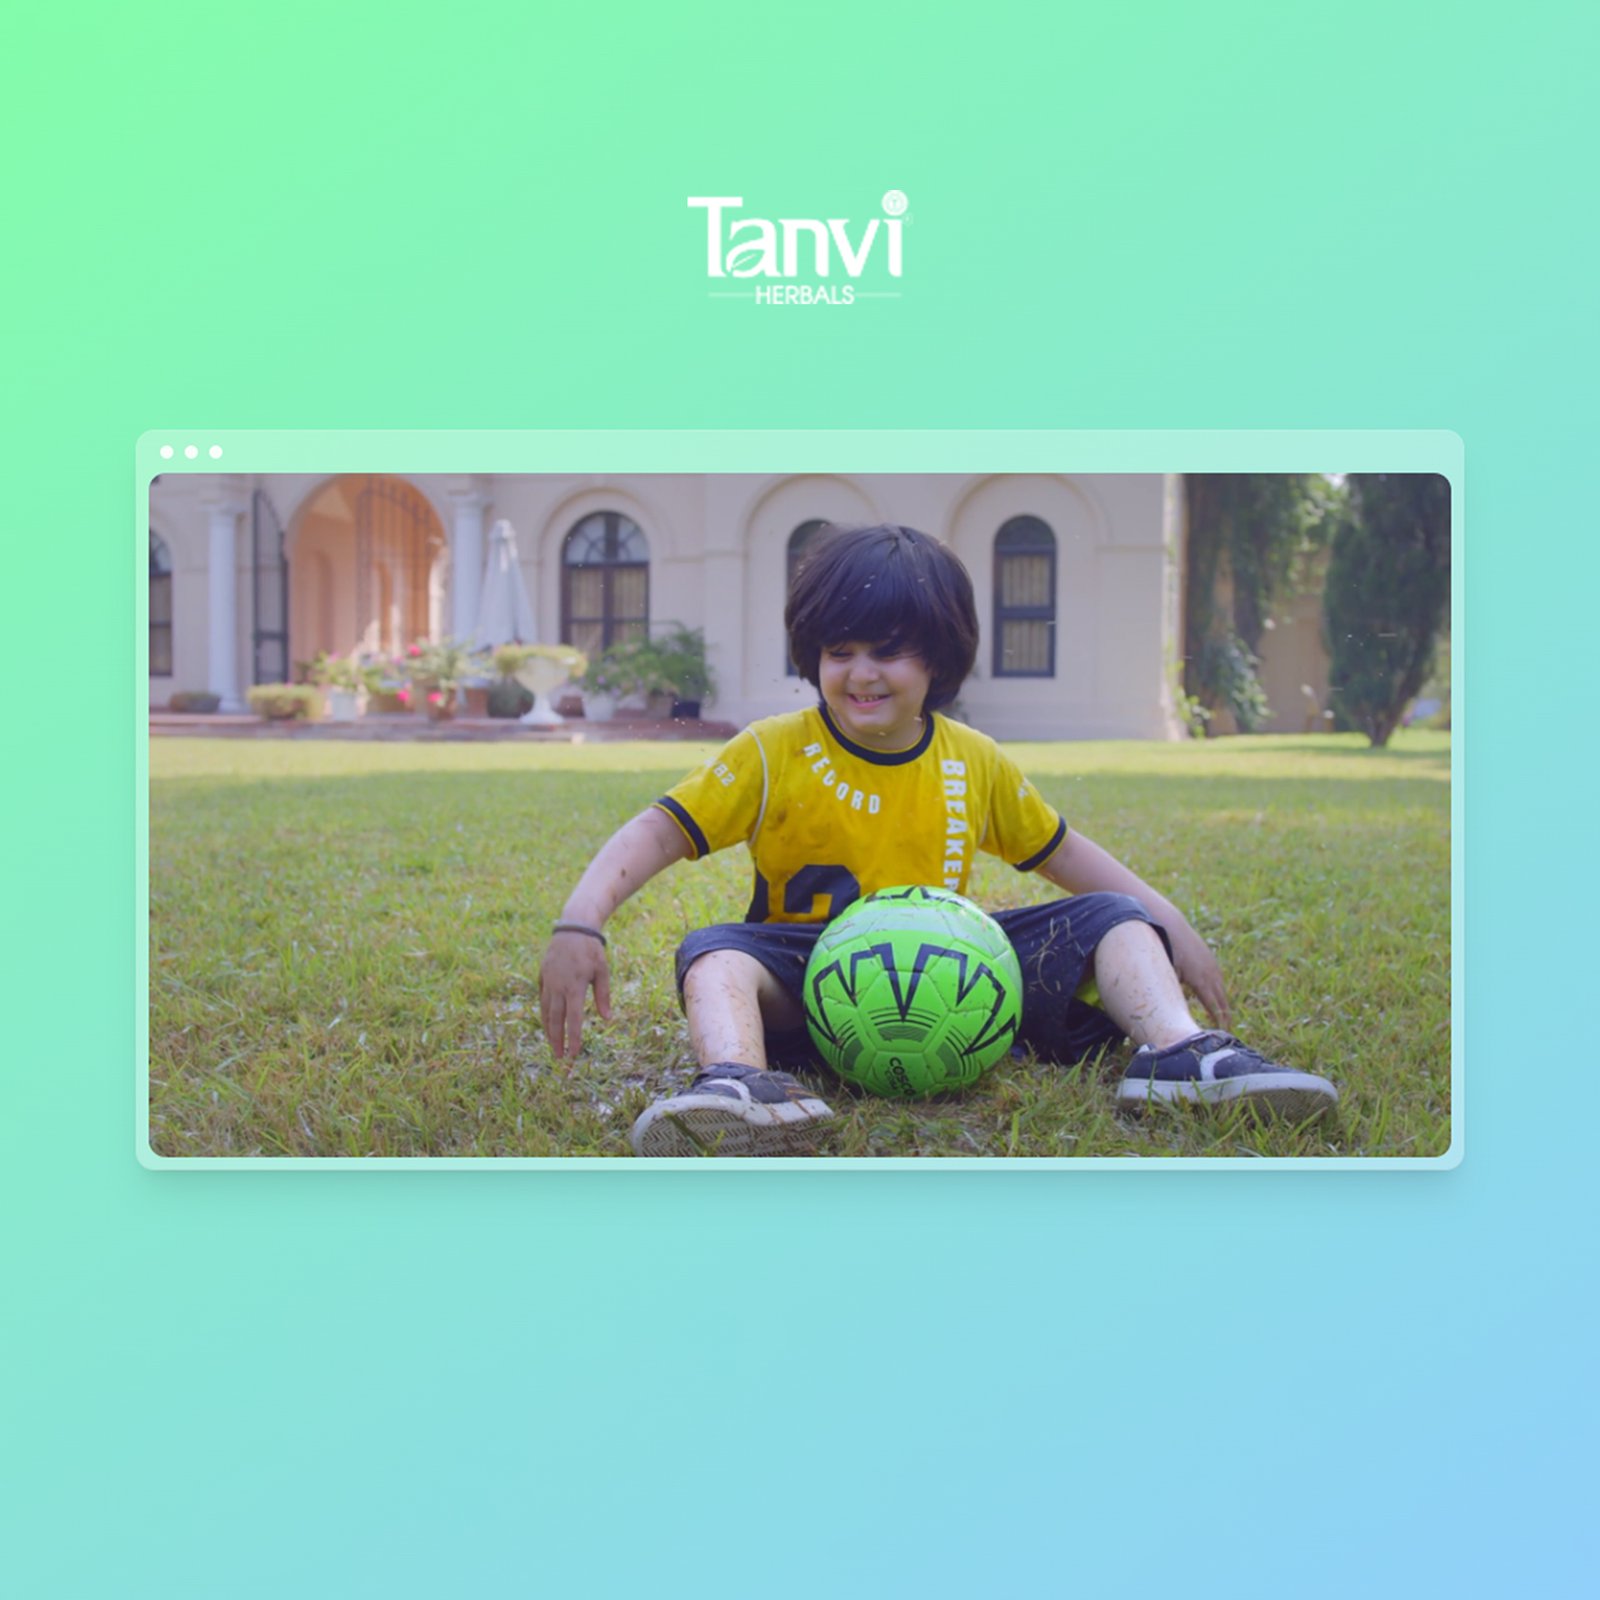 Tanvi Herbals – TV Commercial